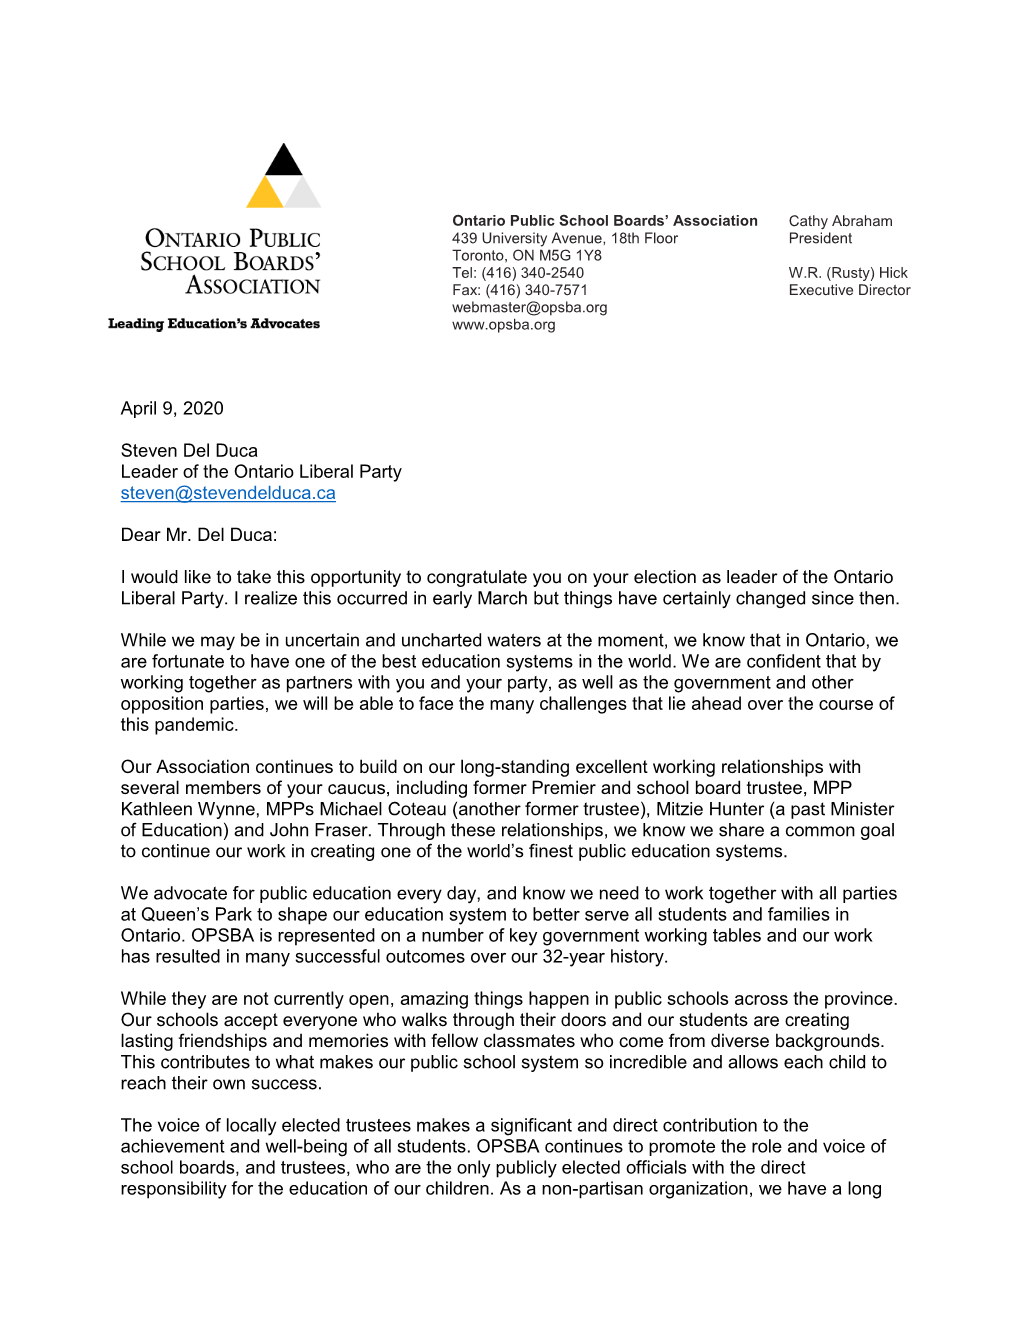 OPSBA Letter to Liberal Leader Steven Del Duca